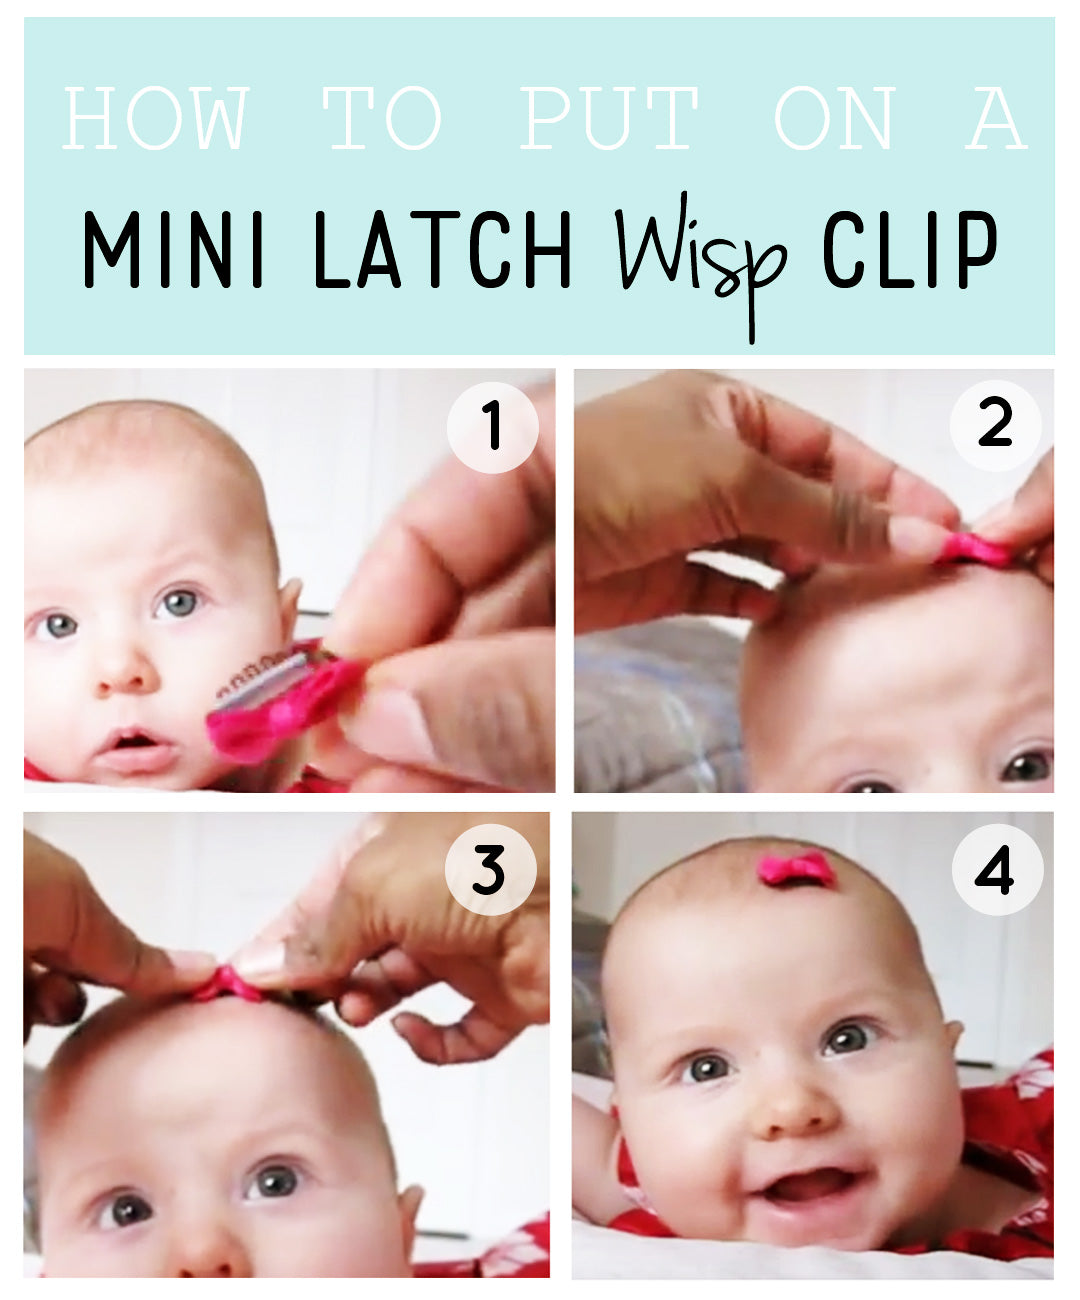 3 Mixed Hair Bows Hair Clip Gift Set - Beautiful Fall Shades Baby Wisp